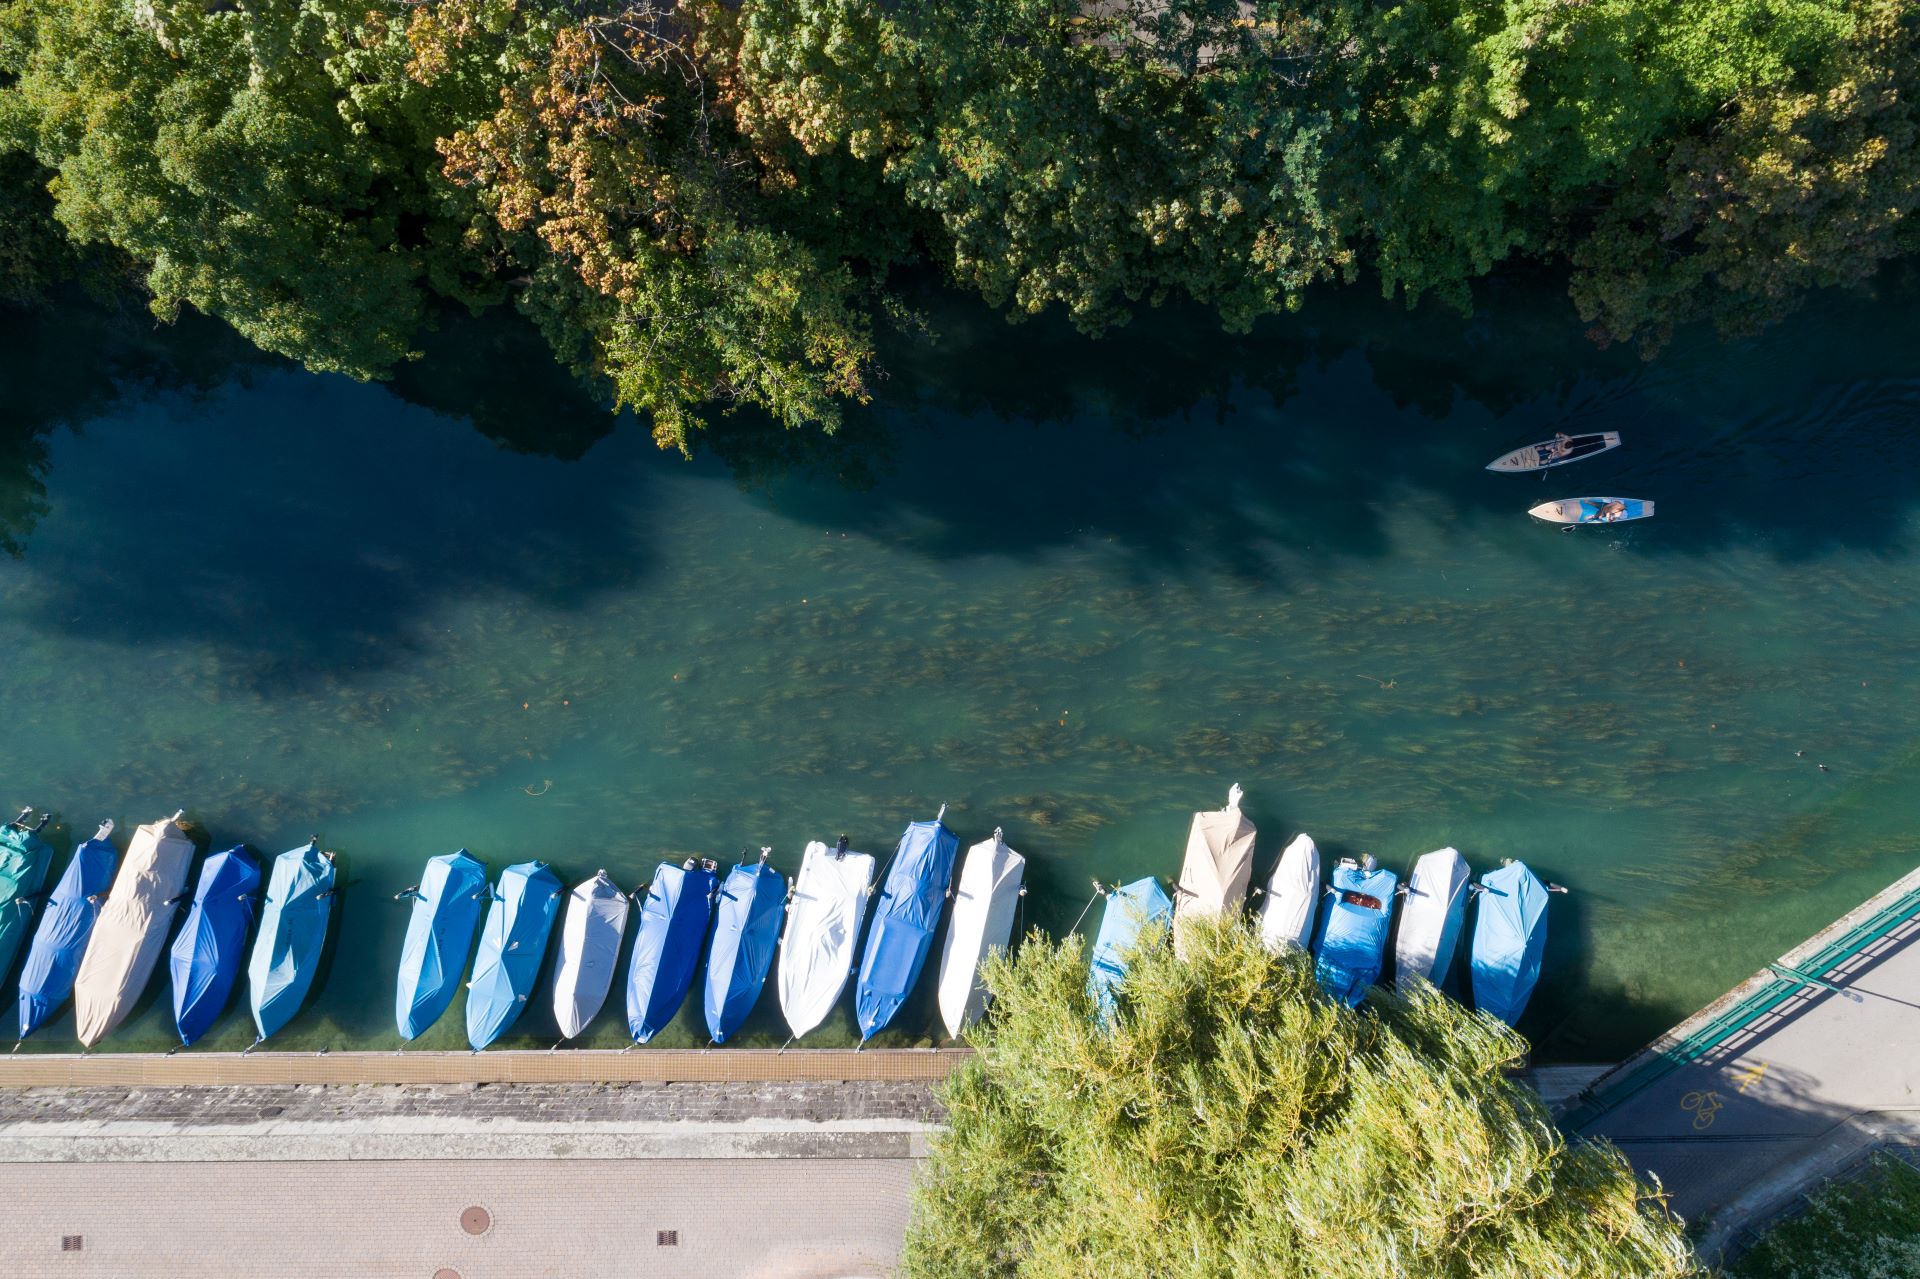 Vista aerea di una riva tranquilla con barche ormeggiate coperte da teli azzurri e beige, accanto a una passeggiata lastricata. Due individui sono visti praticare il stand-up paddle sull'acqua, con alberi rigogliosi lungo il bordo del fiume.